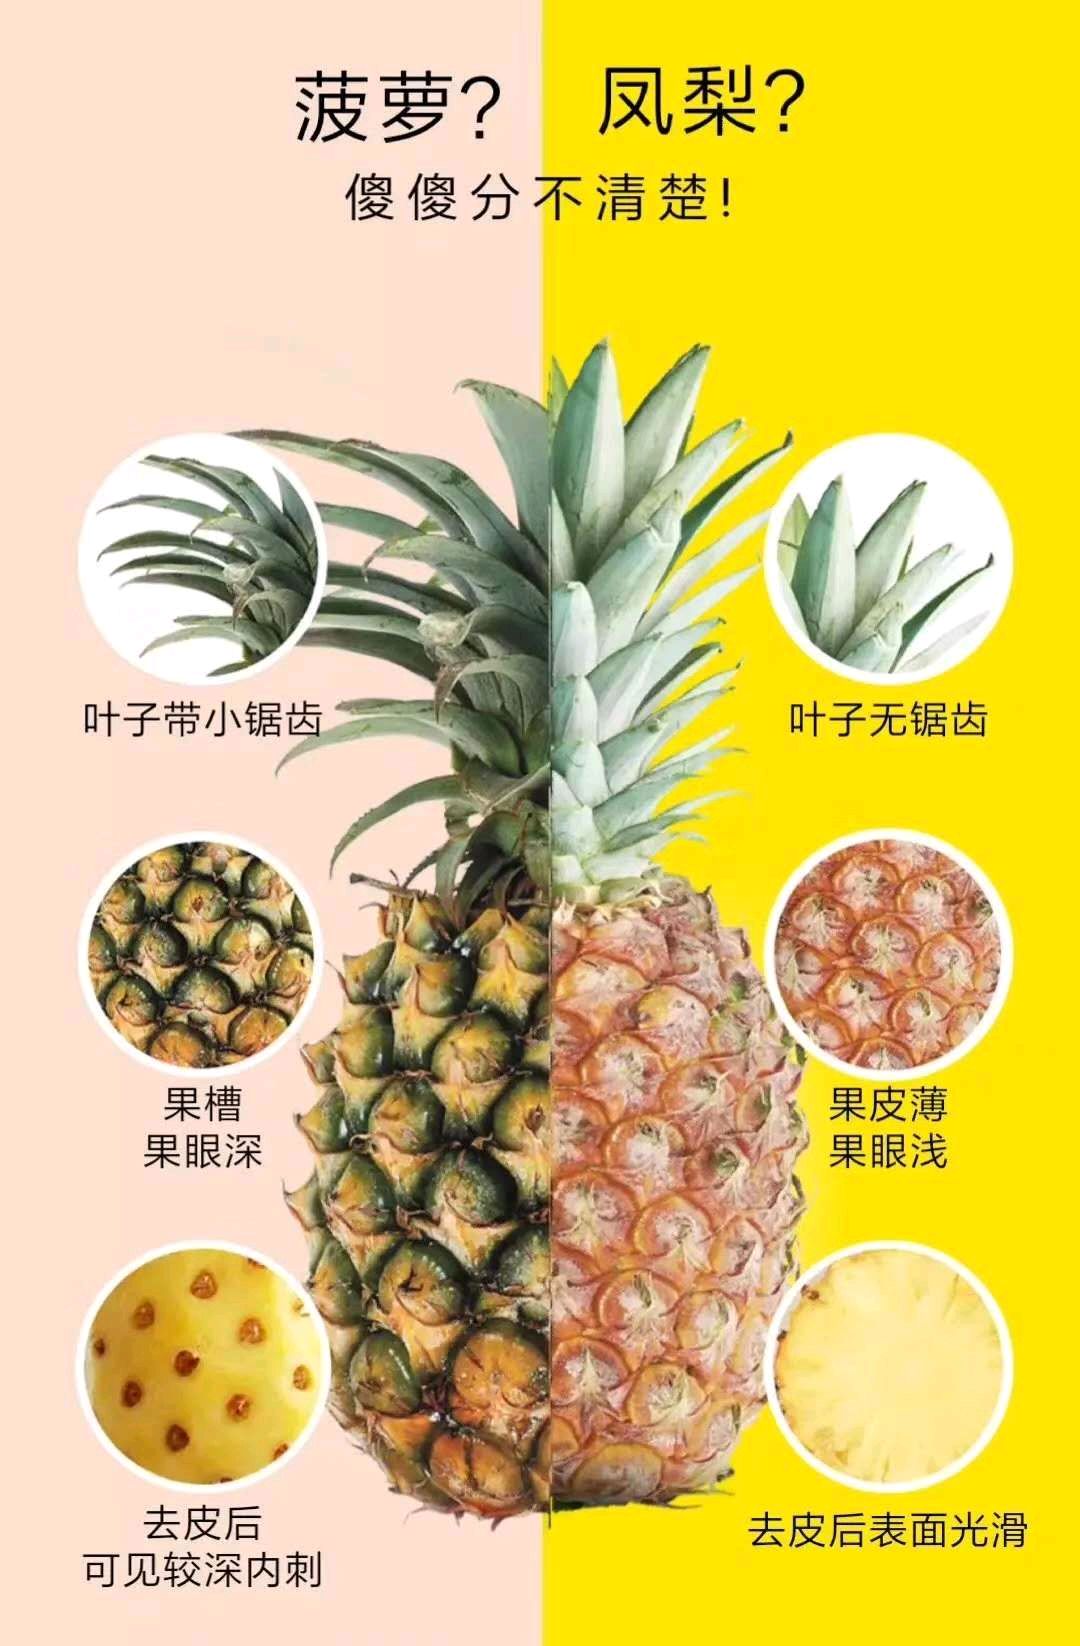 选择新鲜的凤梨,大家一定要区别一下菠萝和凤梨